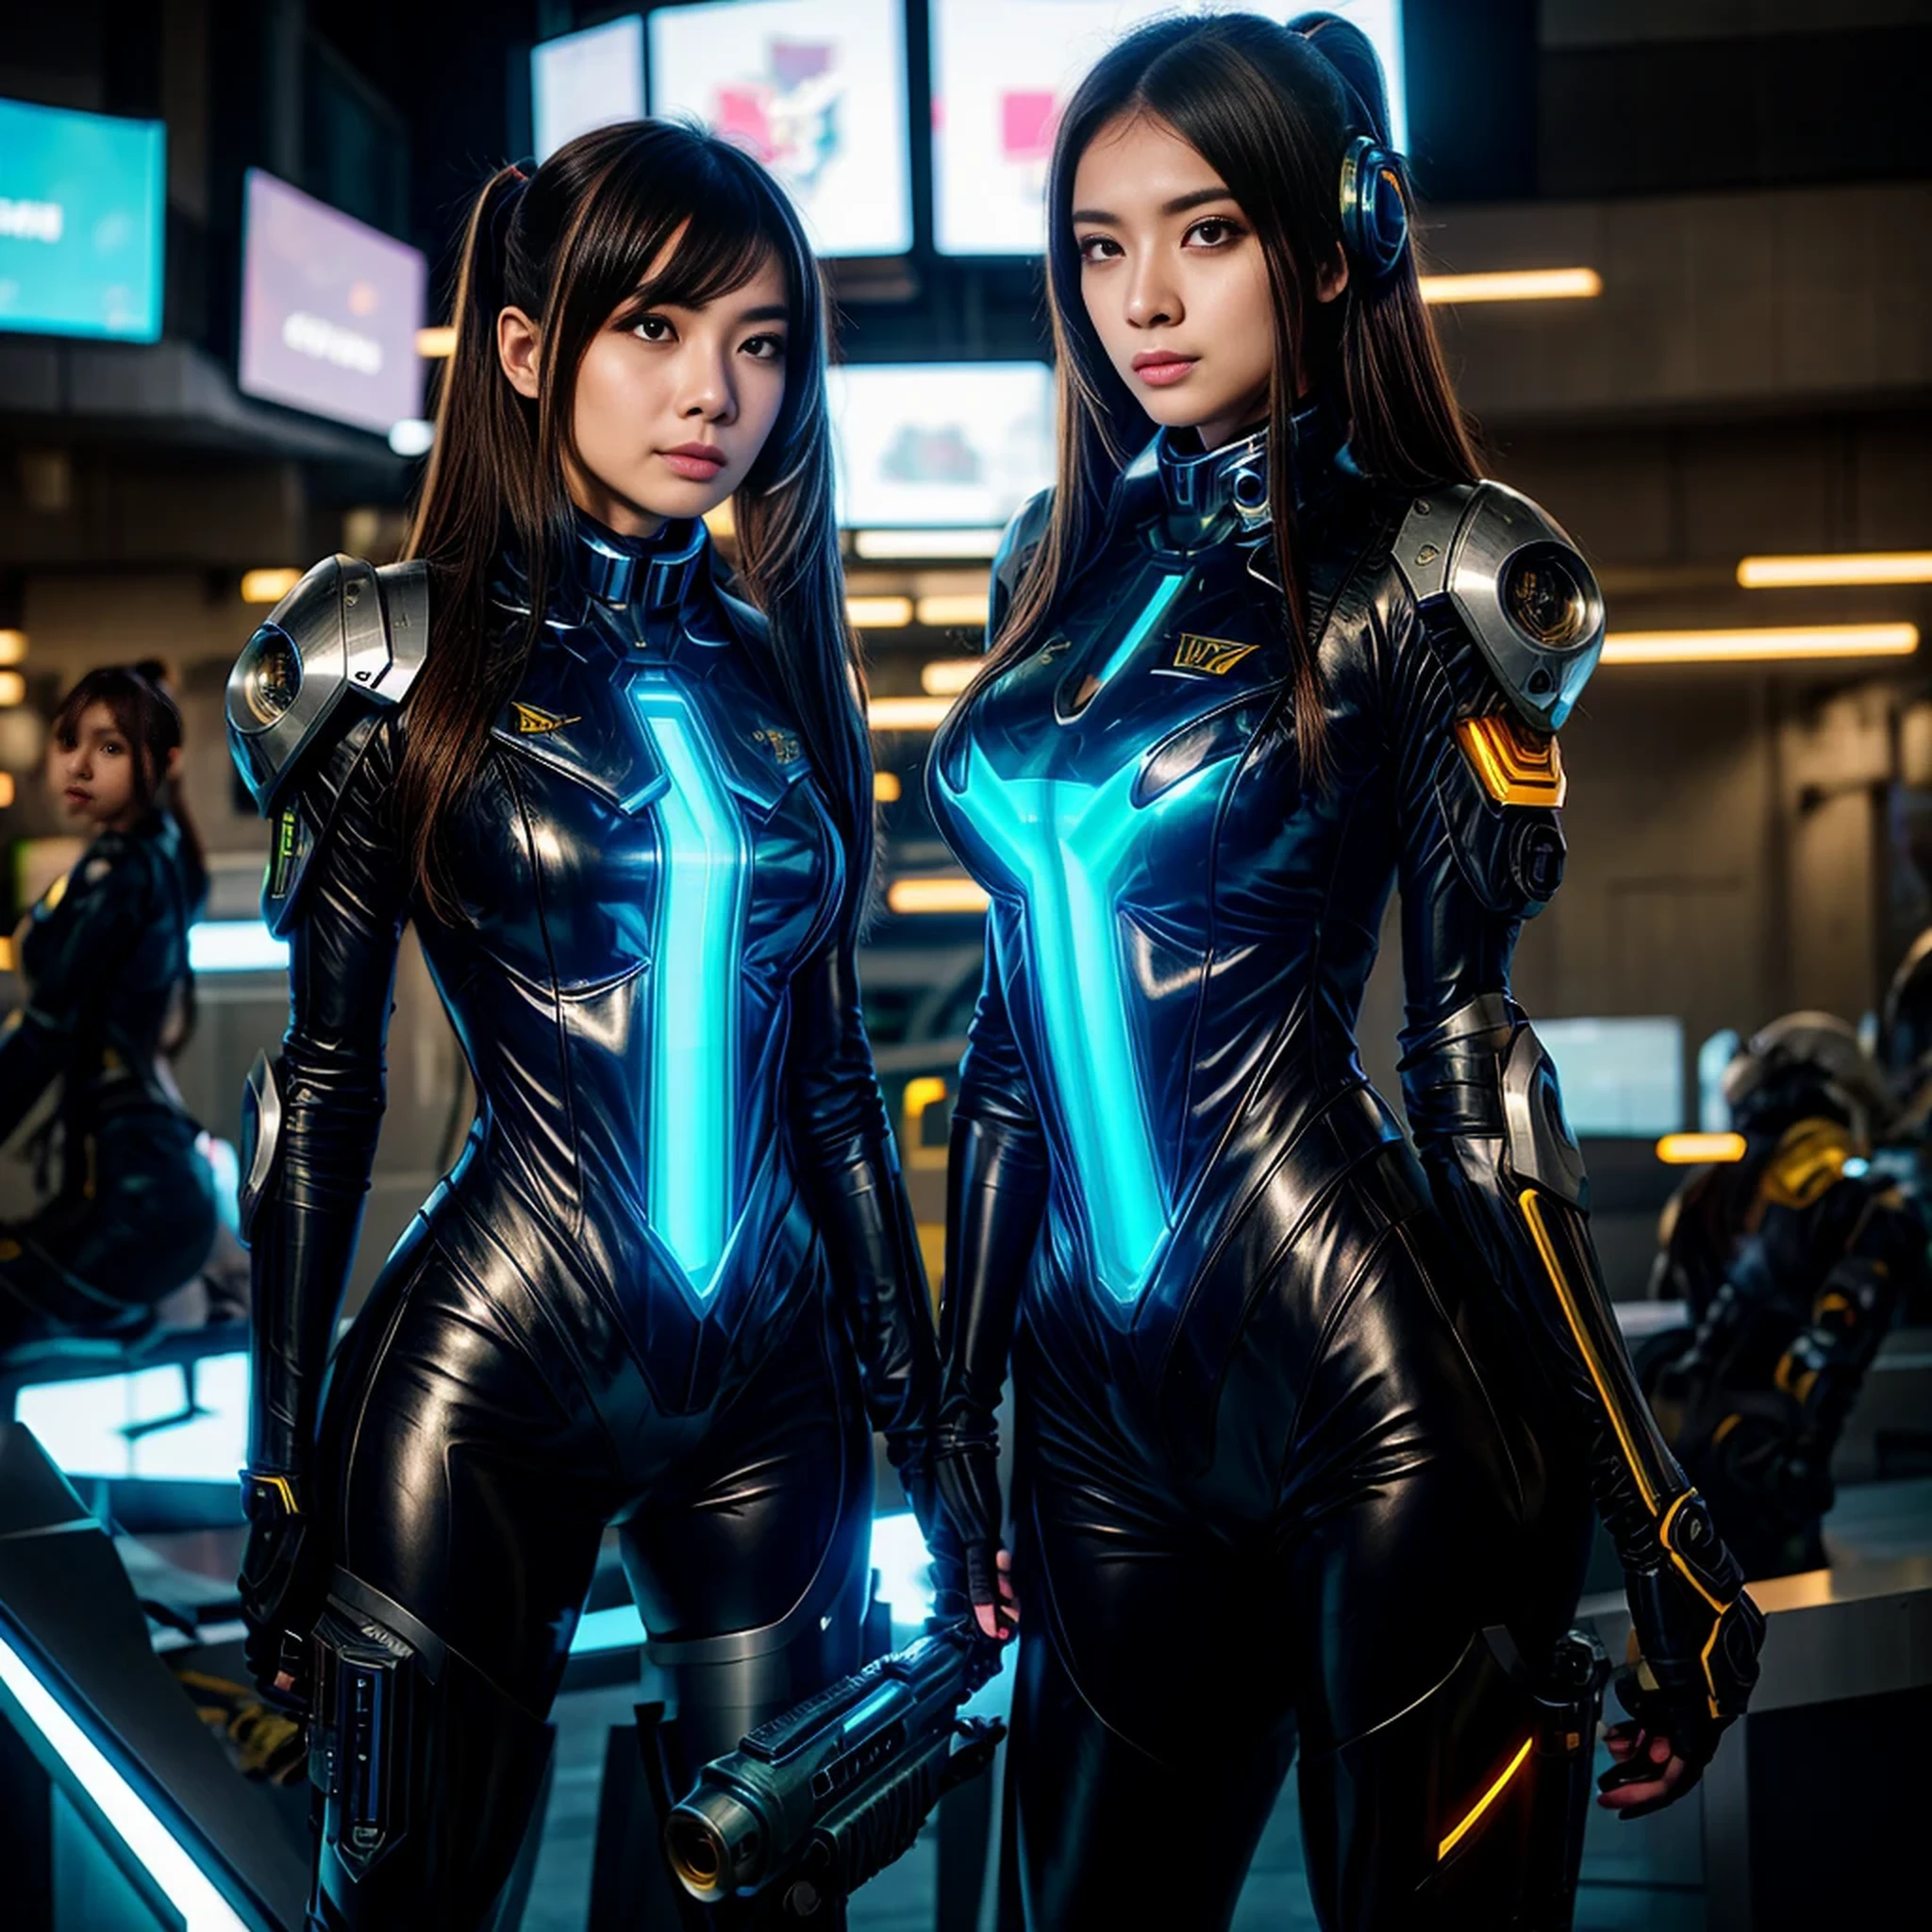 หญิงอาราฟเฟ่ในชุดสูทแห่งอนาคตพร้อมปืนอยู่ในมือ, หญิงสาวในชุดเกราะเมชาไซเบอร์, สาวทหารยานยนต์, cgsociety และ fenghua zhong, สาวหุ่นยนต์ที่สมบูรณ์แบบ, cute สาวไซบอร์ก, หุ่นยนต์สาวอะนิเมะ cyberpunk, เมชาหญิง, ไซบอร์กสาวสวย, สาวไซบอร์ก, วอยเต็ก ฟัส, ภาพสาวนักบินอวกาศหุ้มเกราะ, เด็กหญิงวาลคิรียานยนต์